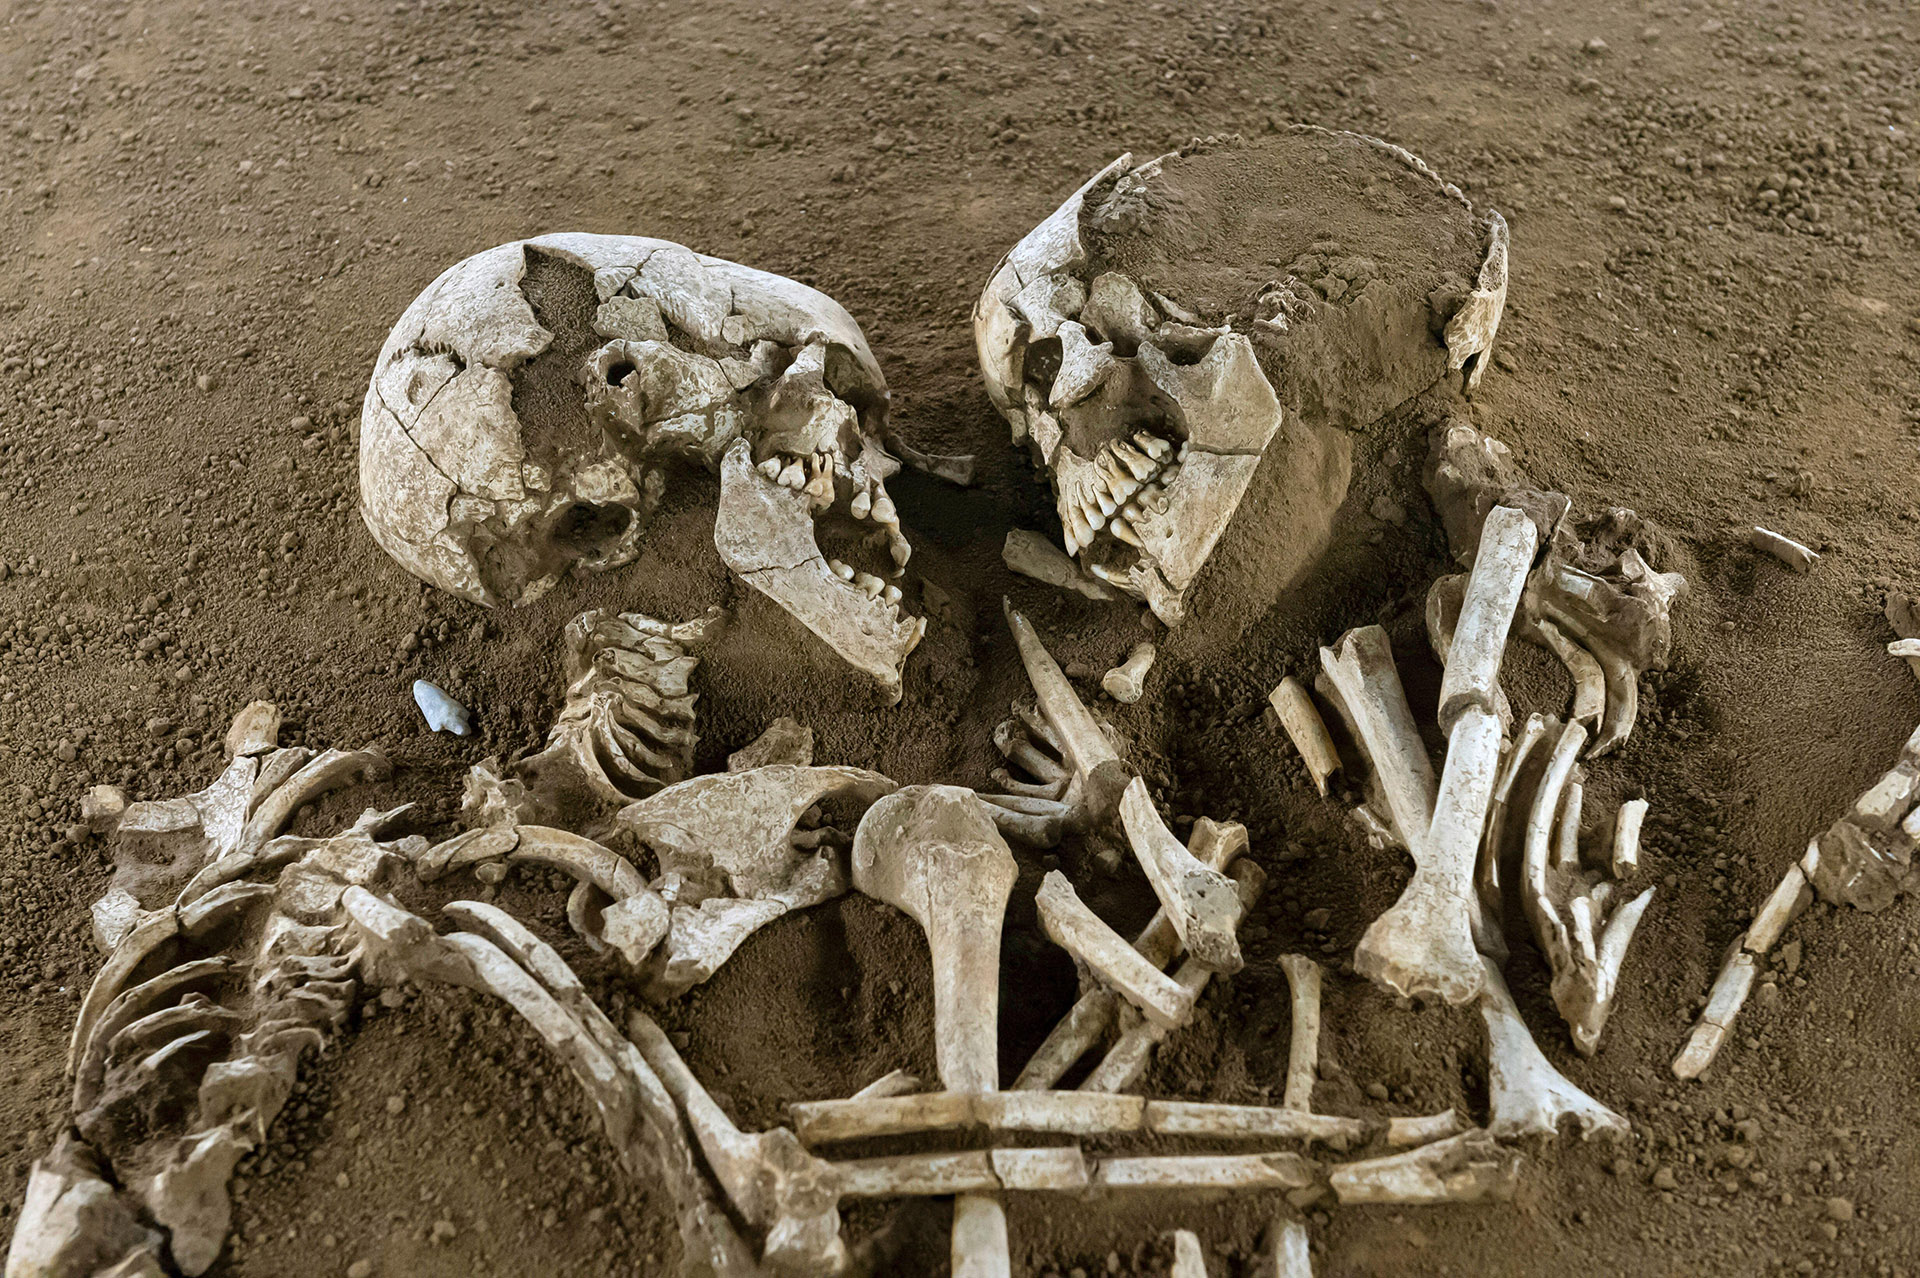 La historia de los cadáveres sepultados hace más de 5.000 años que fueron hallados abrazados